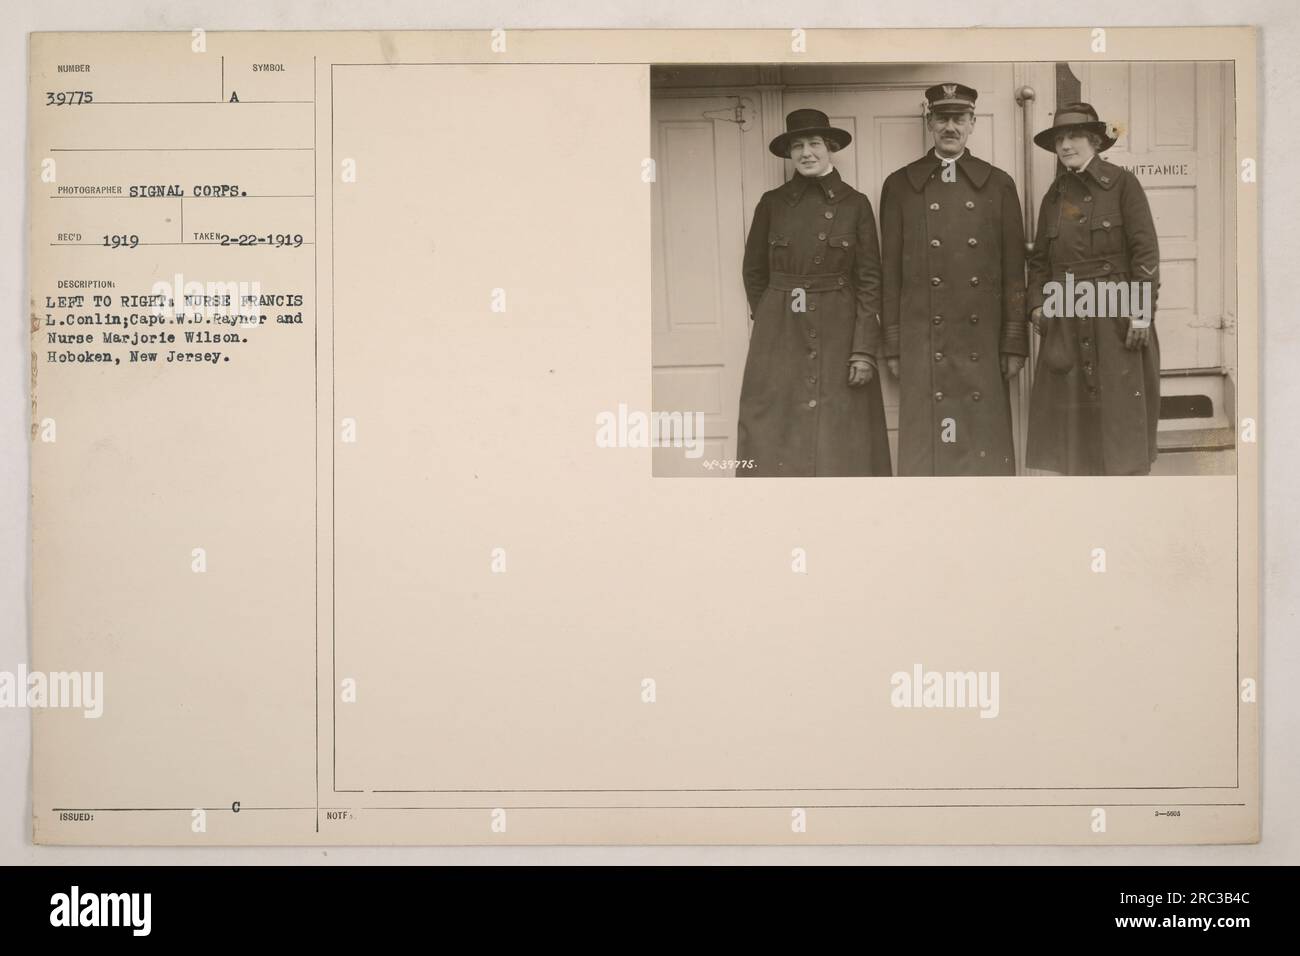 Infermiera Francis L. Conlin, capitano W.D. Rayner e l'infermiera Marjorie Wilson fotografarono a Hoboken, New Jersey nel 1919. Questa immagine fu catturata dal Signal Corps e gli fu assegnato il numero 39775. Foto Stock